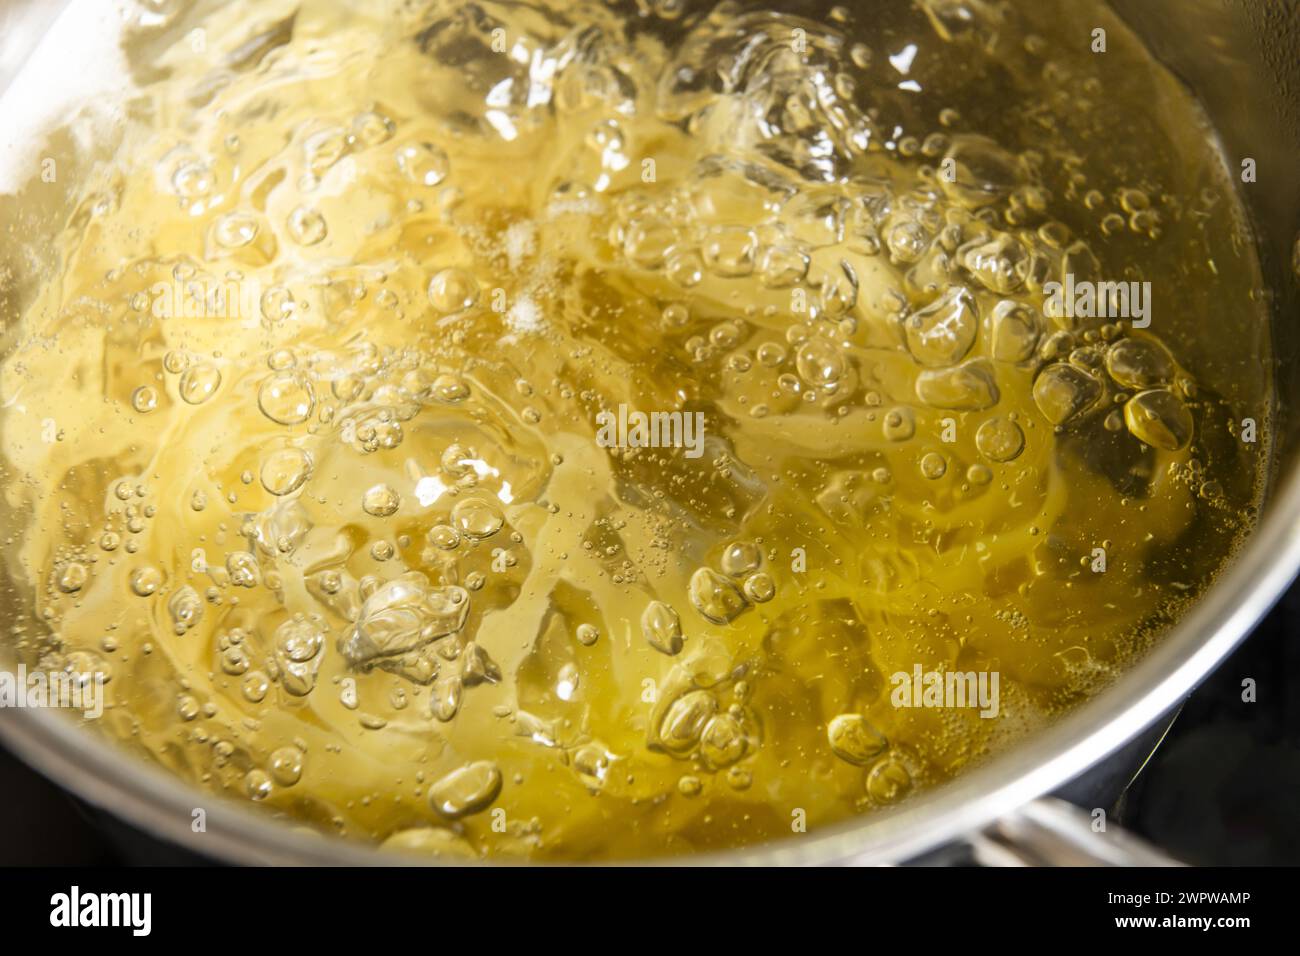 Nouilles cuisant à l'intérieur d'une casserole en acier inoxydable remplie d'eau bouillante bouillante bouillante à 100 degrés Celsius. Banque D'Images